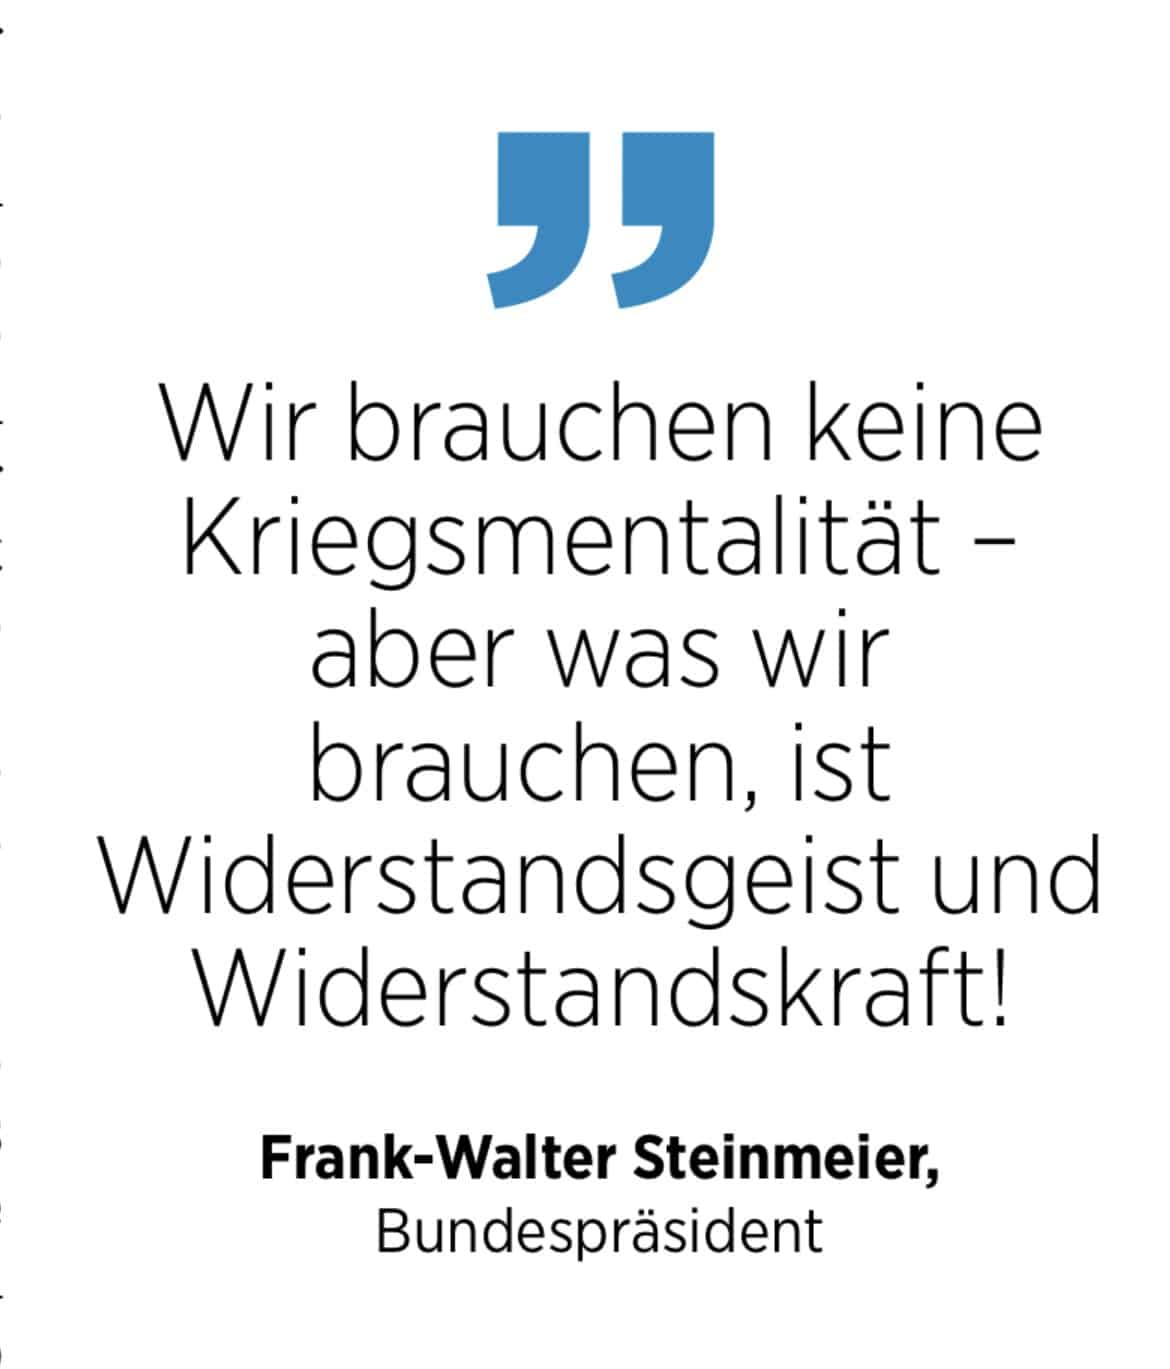 Zitat von Bundespräsident Frank-Walter Steinmeier zu Widerstandsgeist 